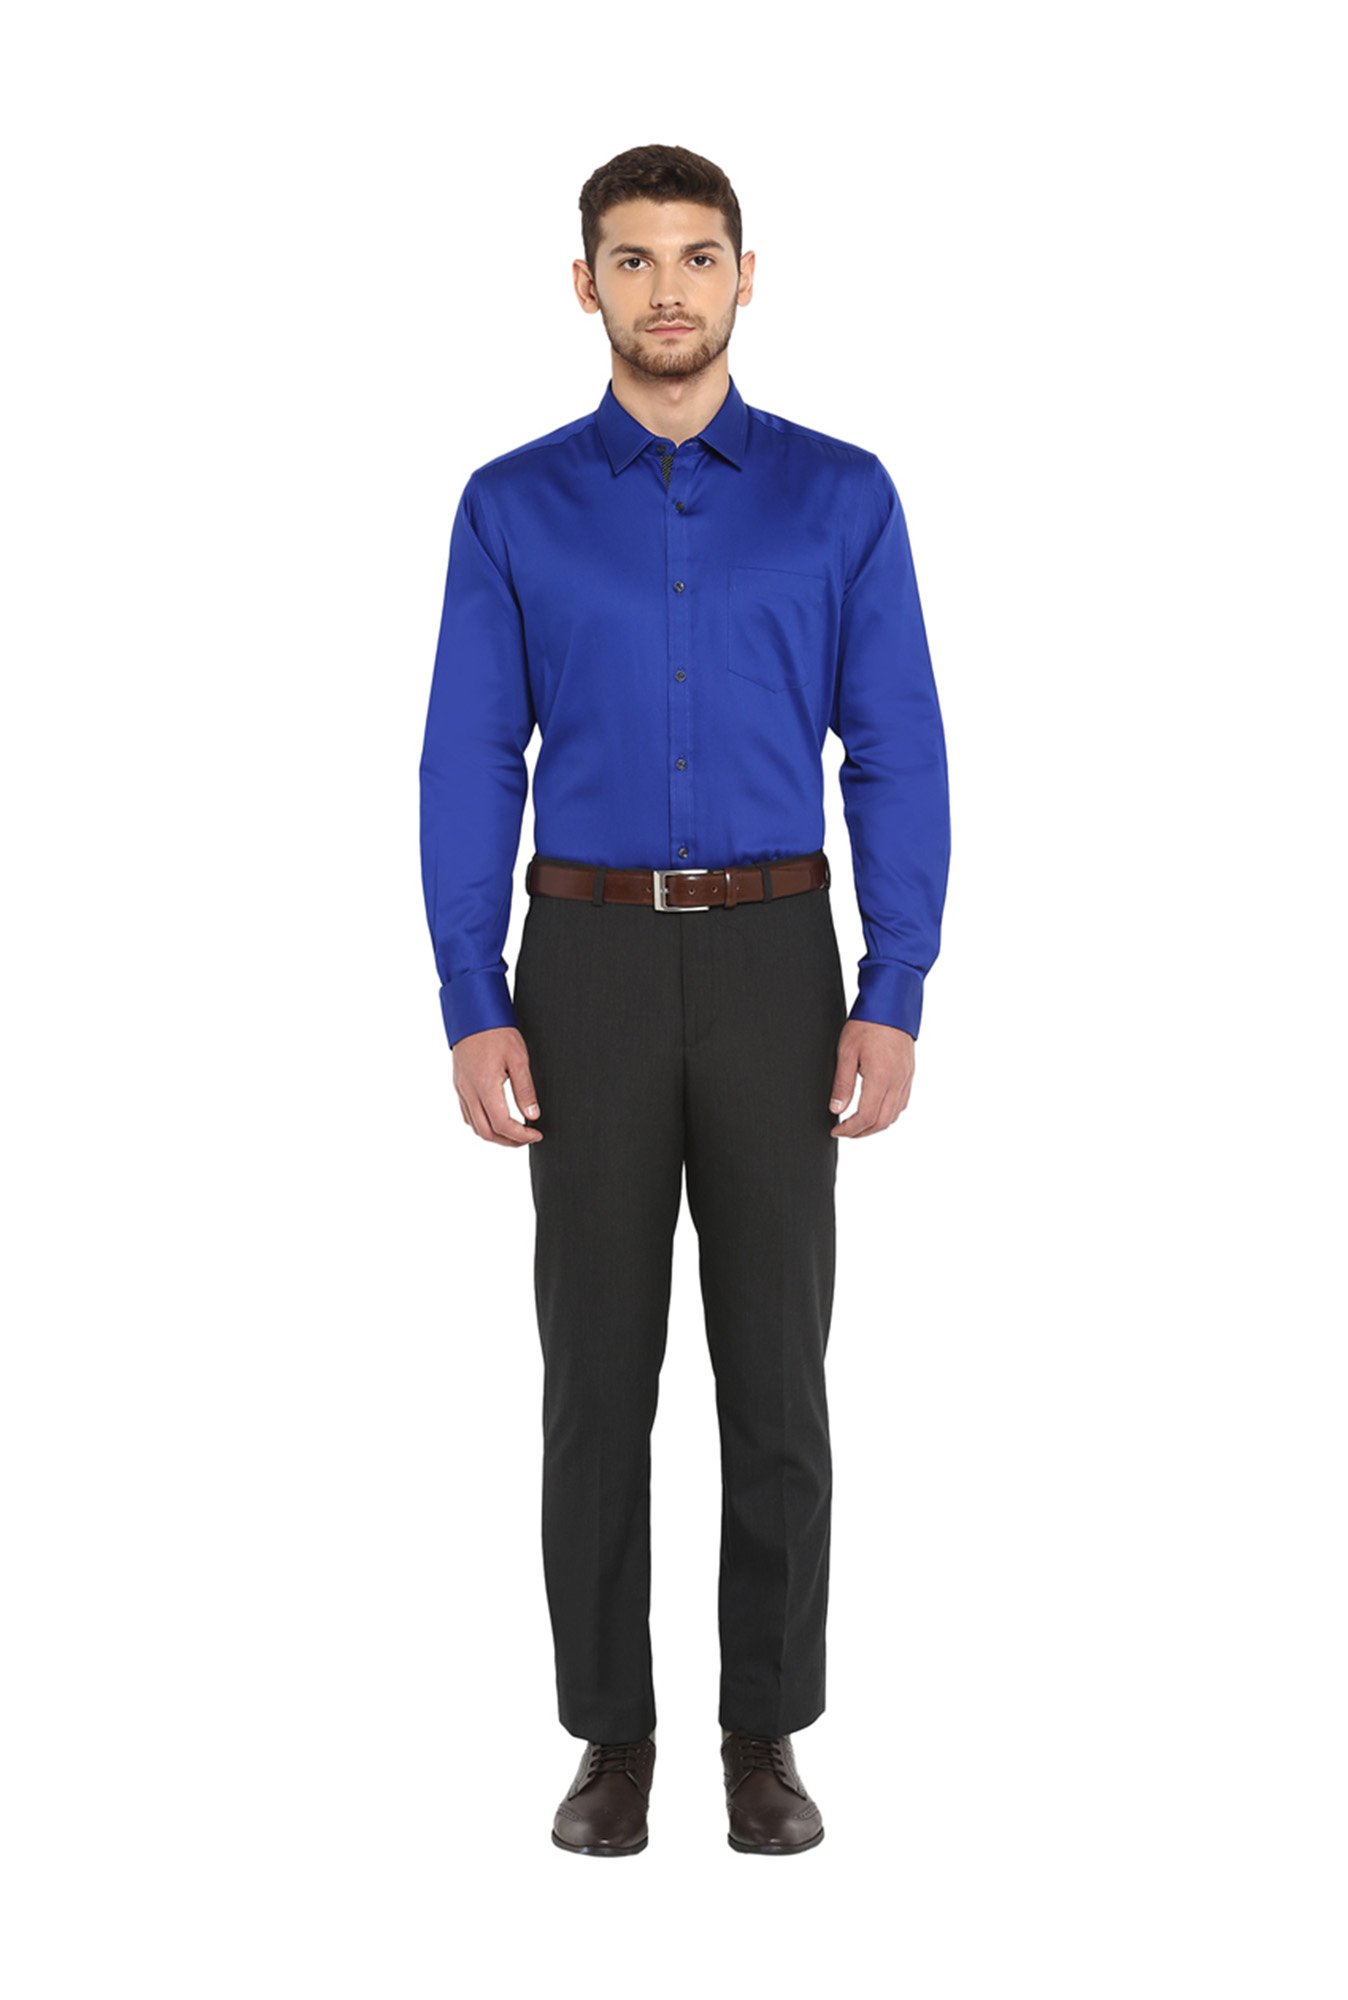 What color pants suit a blue shirt  Quora